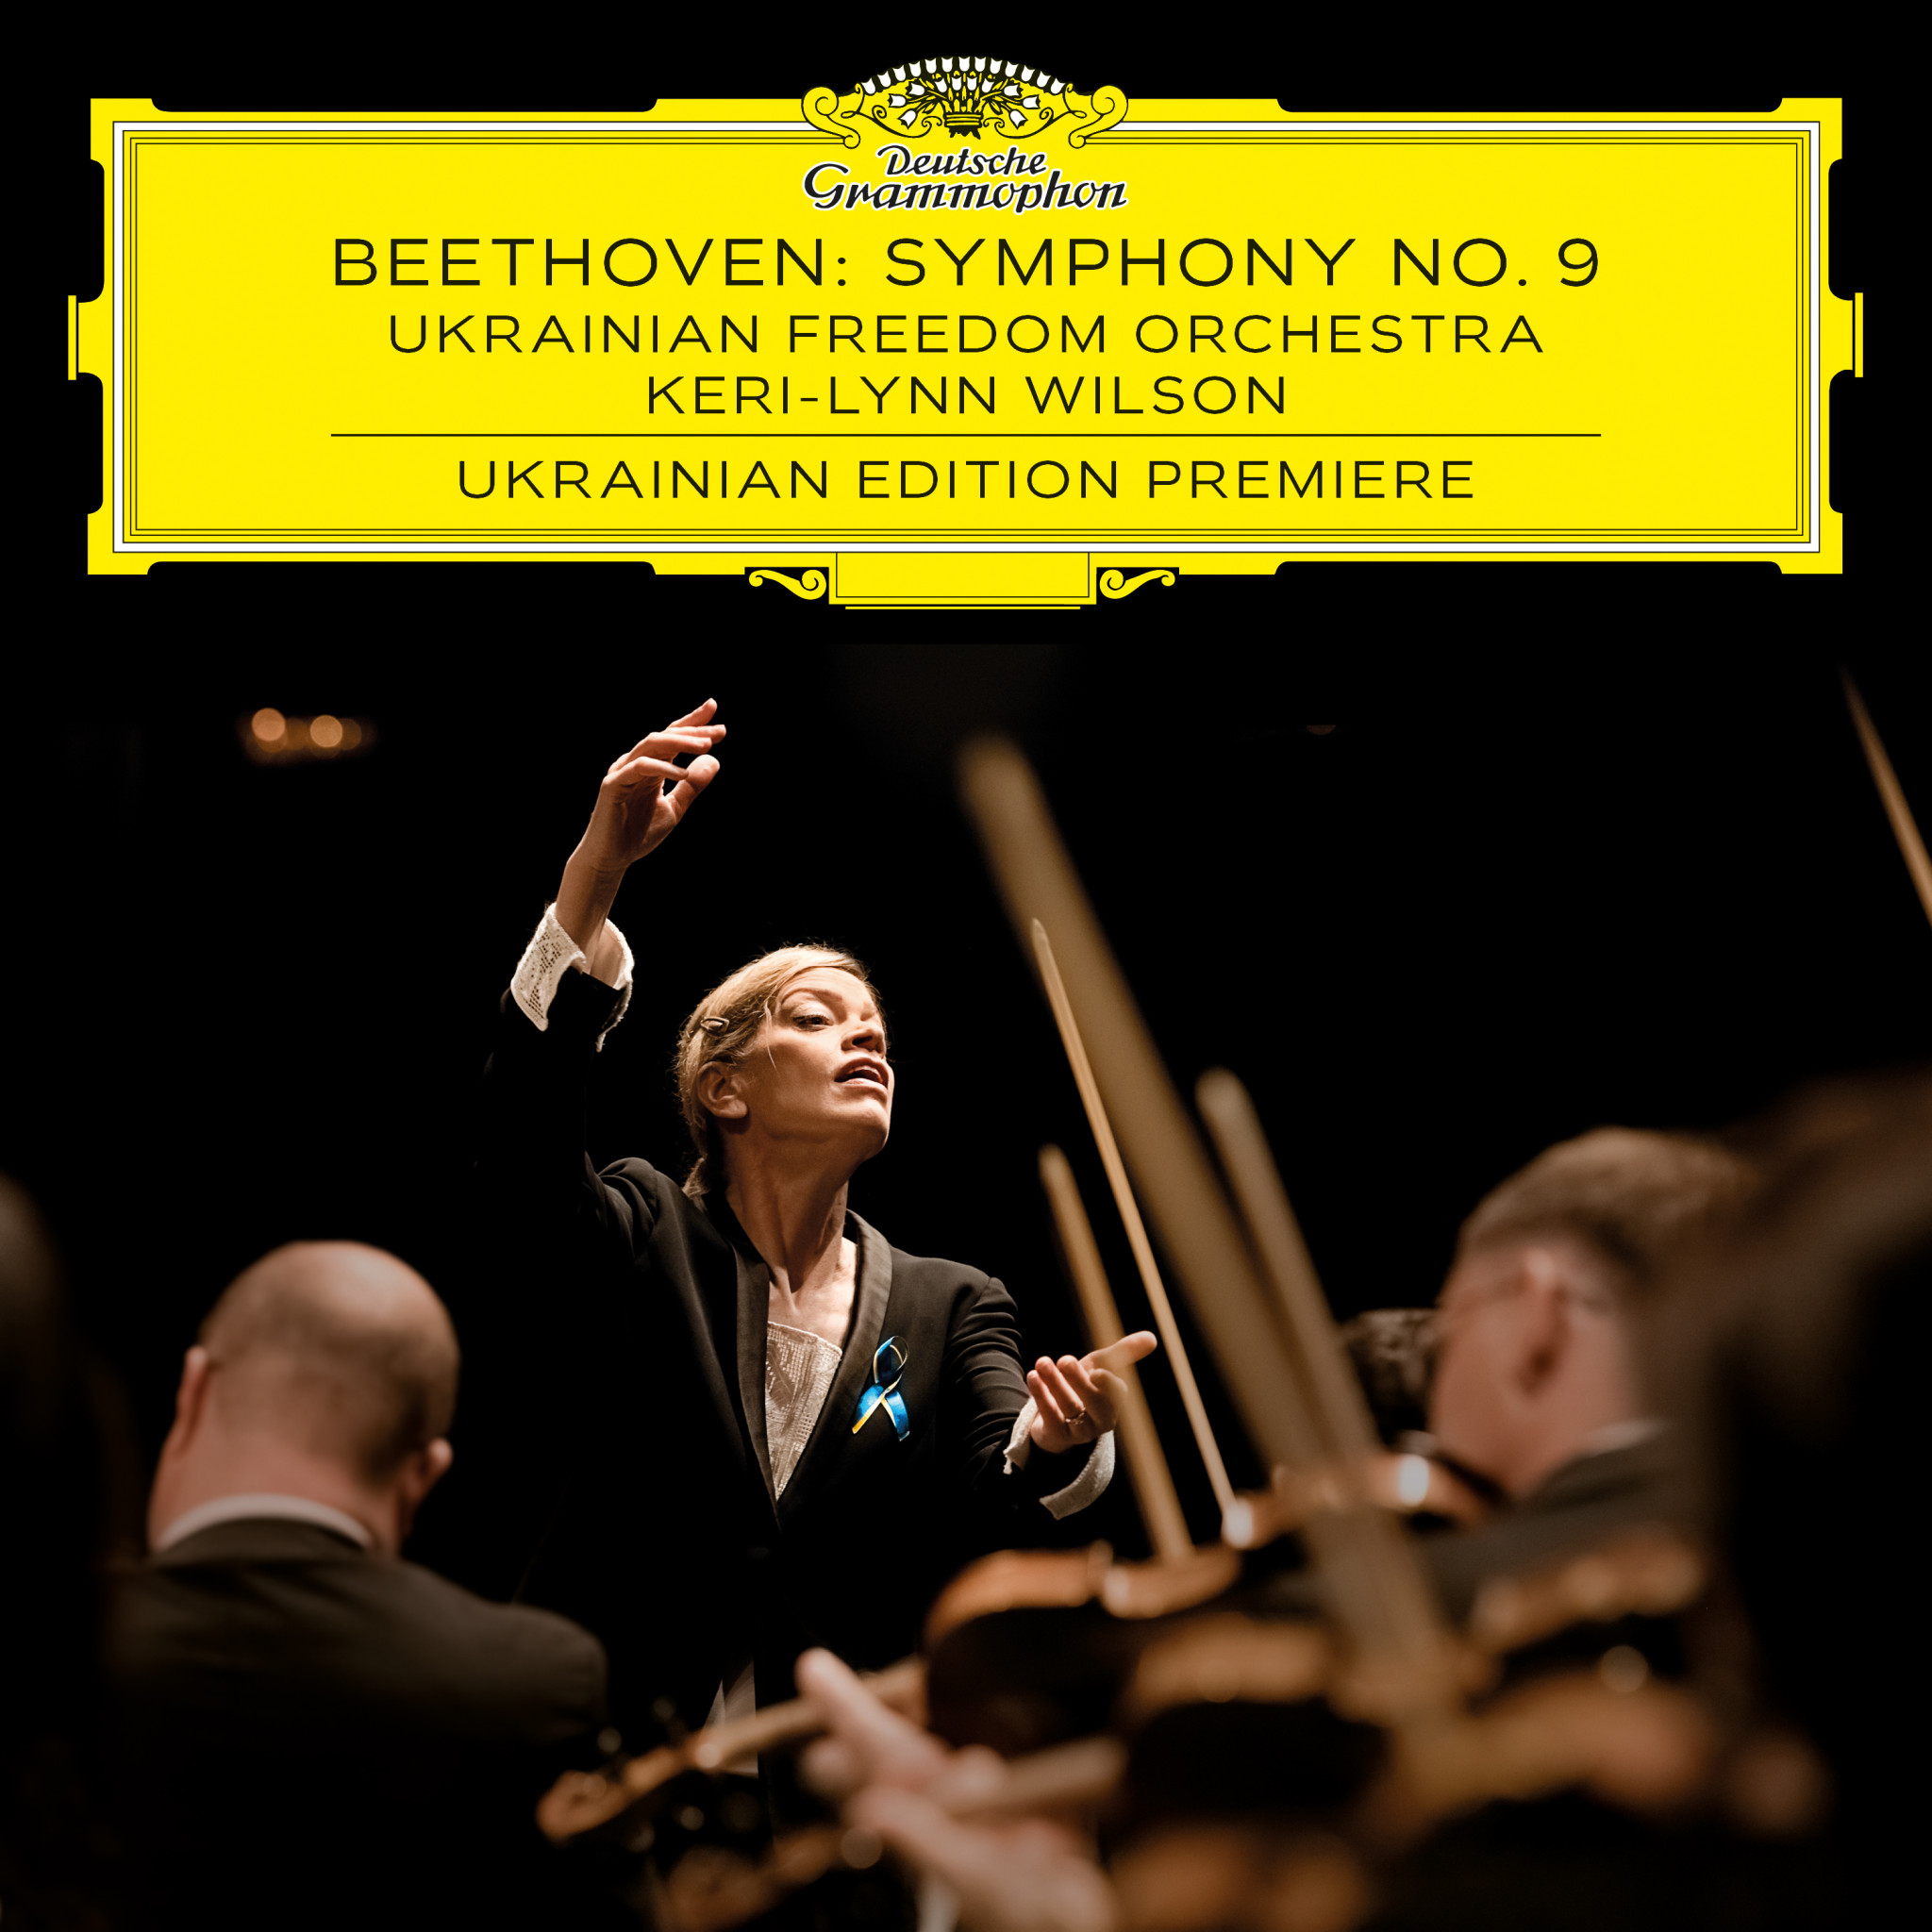 Keri-Lynn Wilson - Beethoven: Symphony No. 9